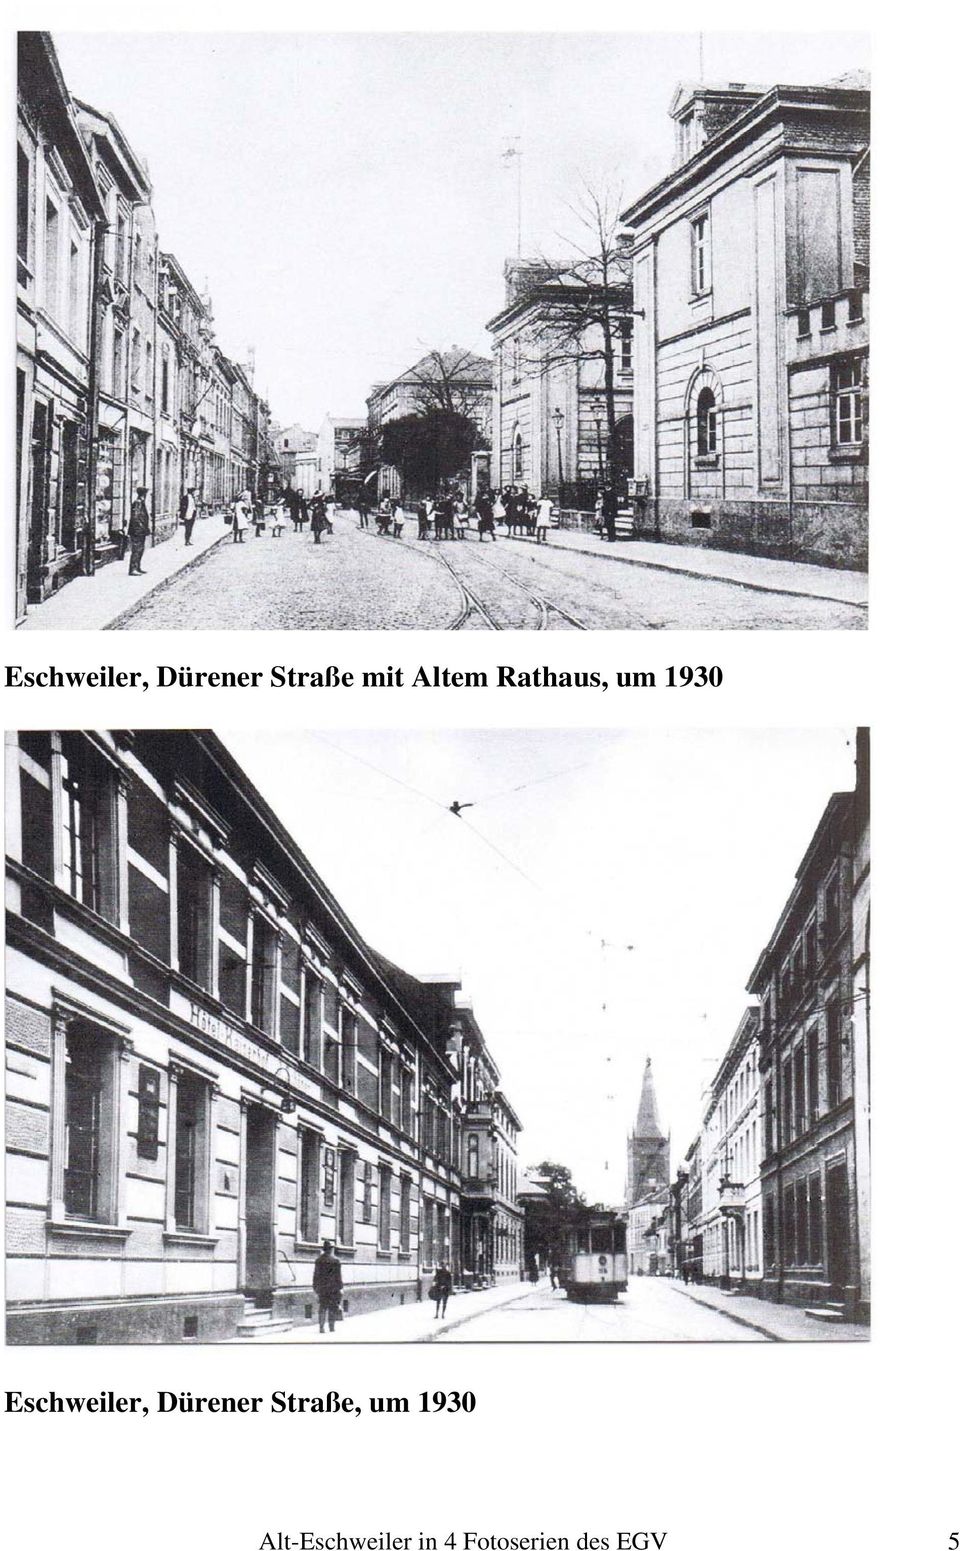 Eschweiler, Dürener Straße, um